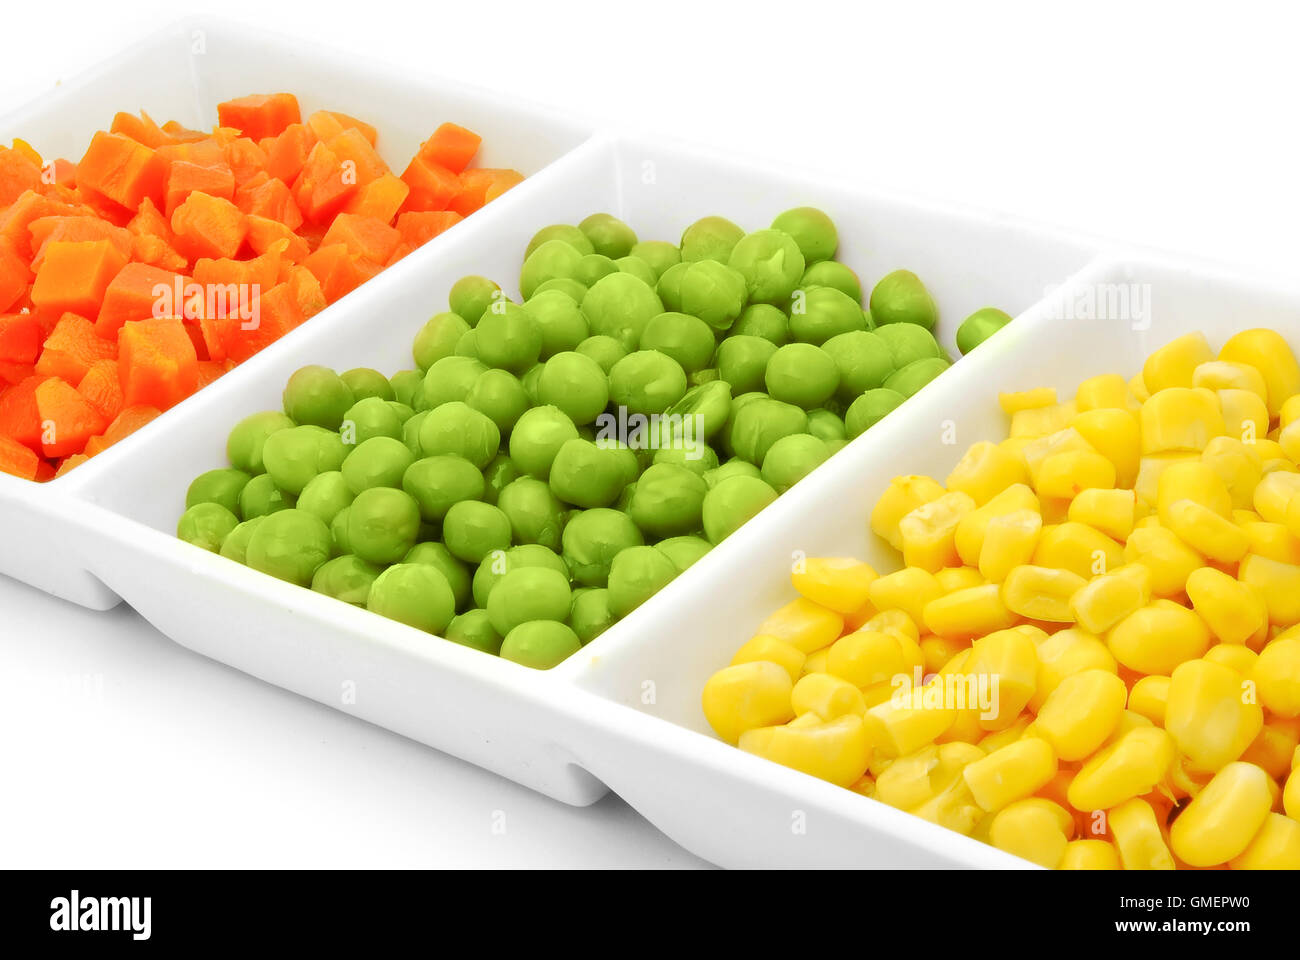 Ingredienti per insalata Foto Stock